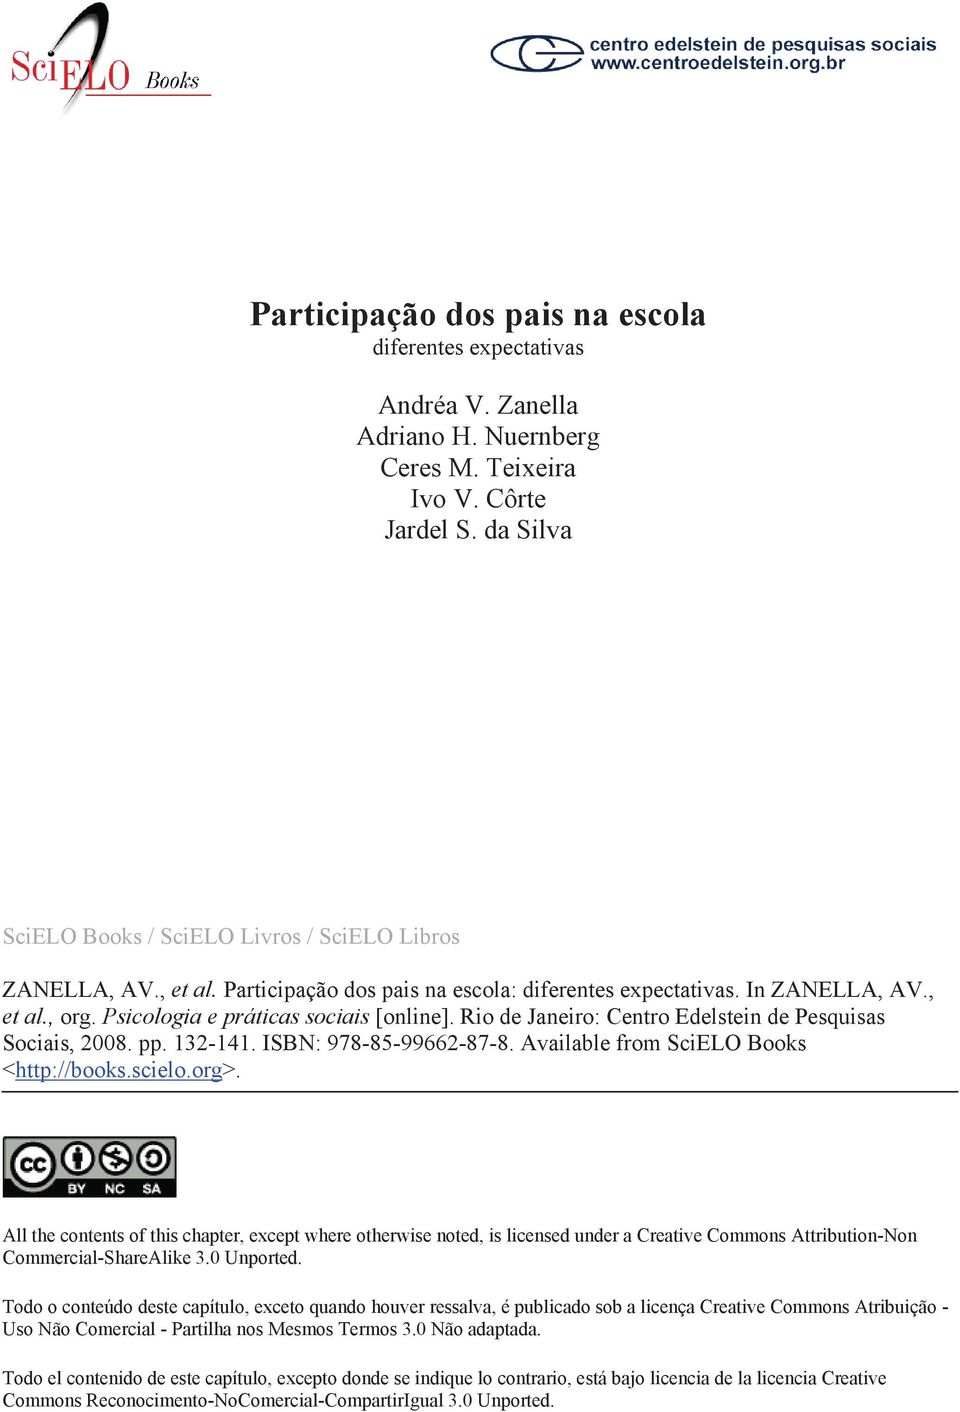 Psicologia e práticas sociais [online]. Rio de Janeiro: Centro Edelstein de Pesquisas Sociais, 2008. pp. 132-141. ISBN: 978-85-99662-87-8. Available from SciELO Books <http://books.scielo.org>.